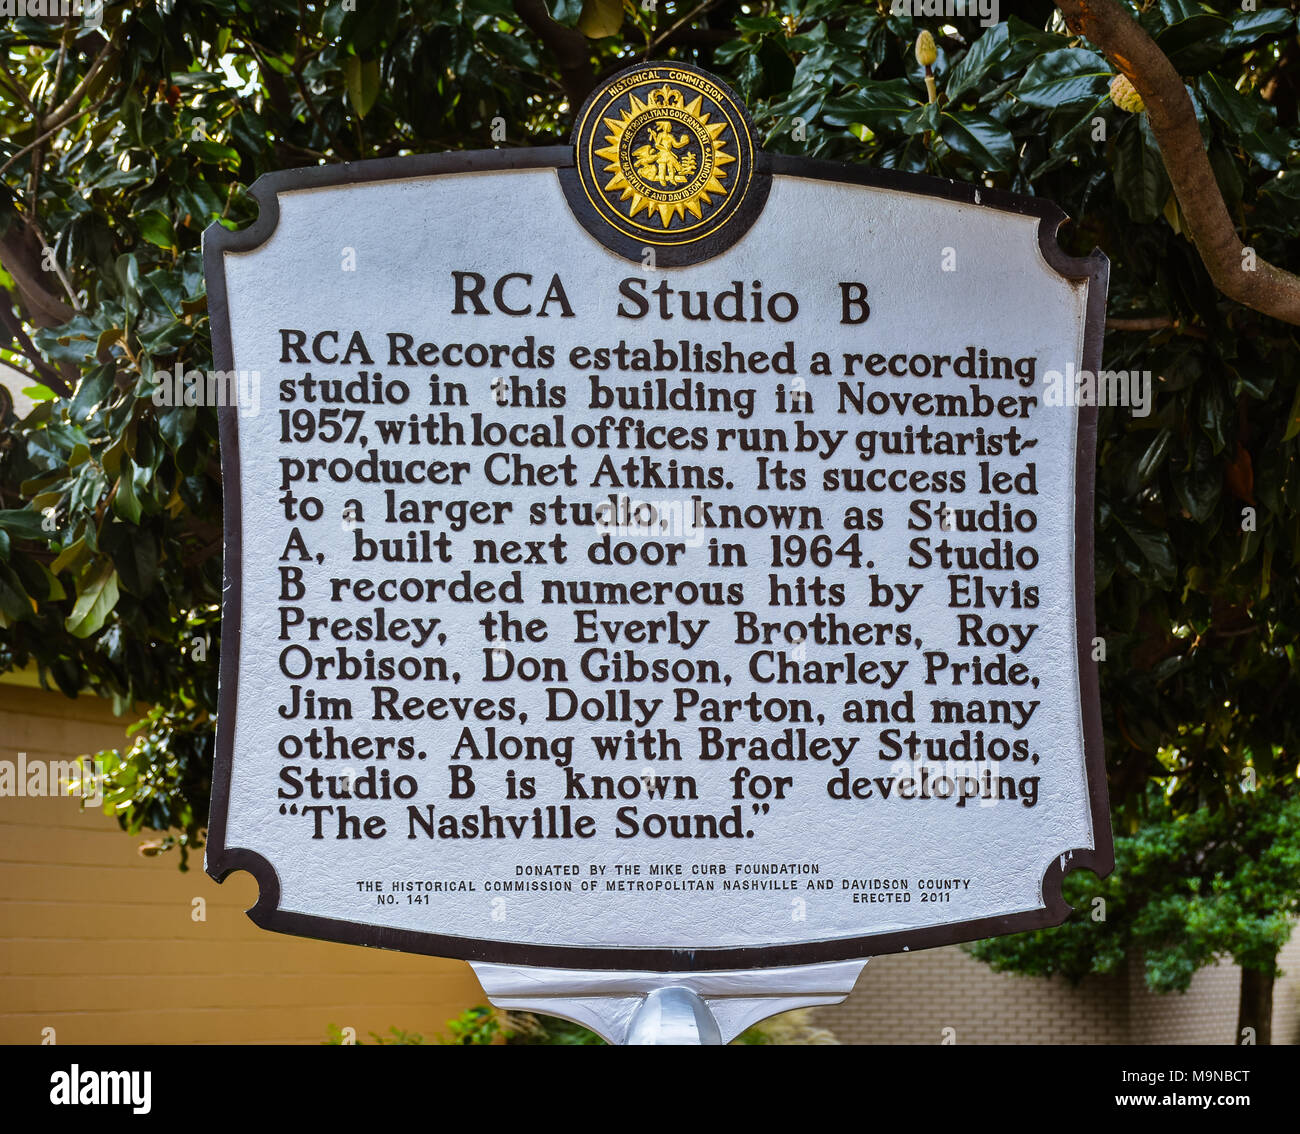 Describe la historia del marcador de RCA Studio B, una vez que el inicio de grabación de música popular titanes como Elvis Presley, Chet Atkins, Eddy Arnold, etc. Foto de stock